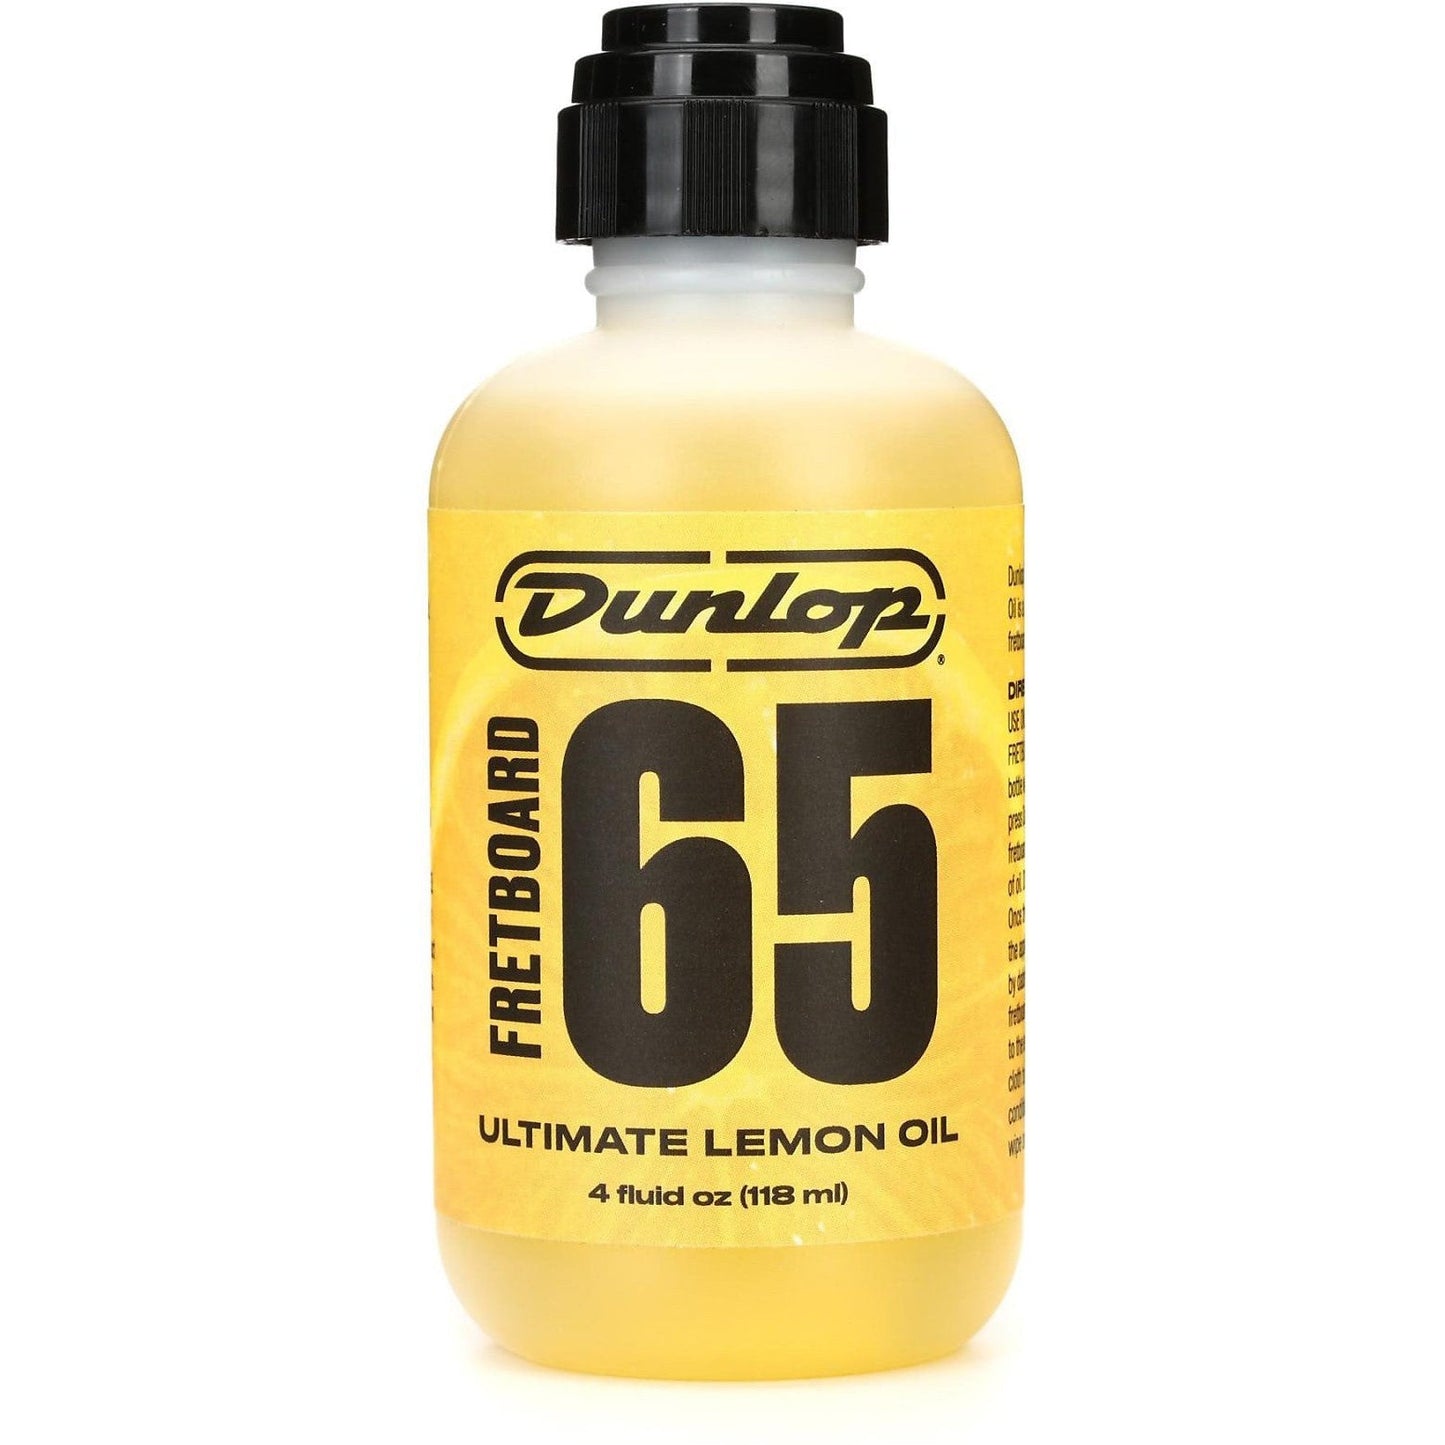 Dunlop Ultimate Lemon Oil (118ml)